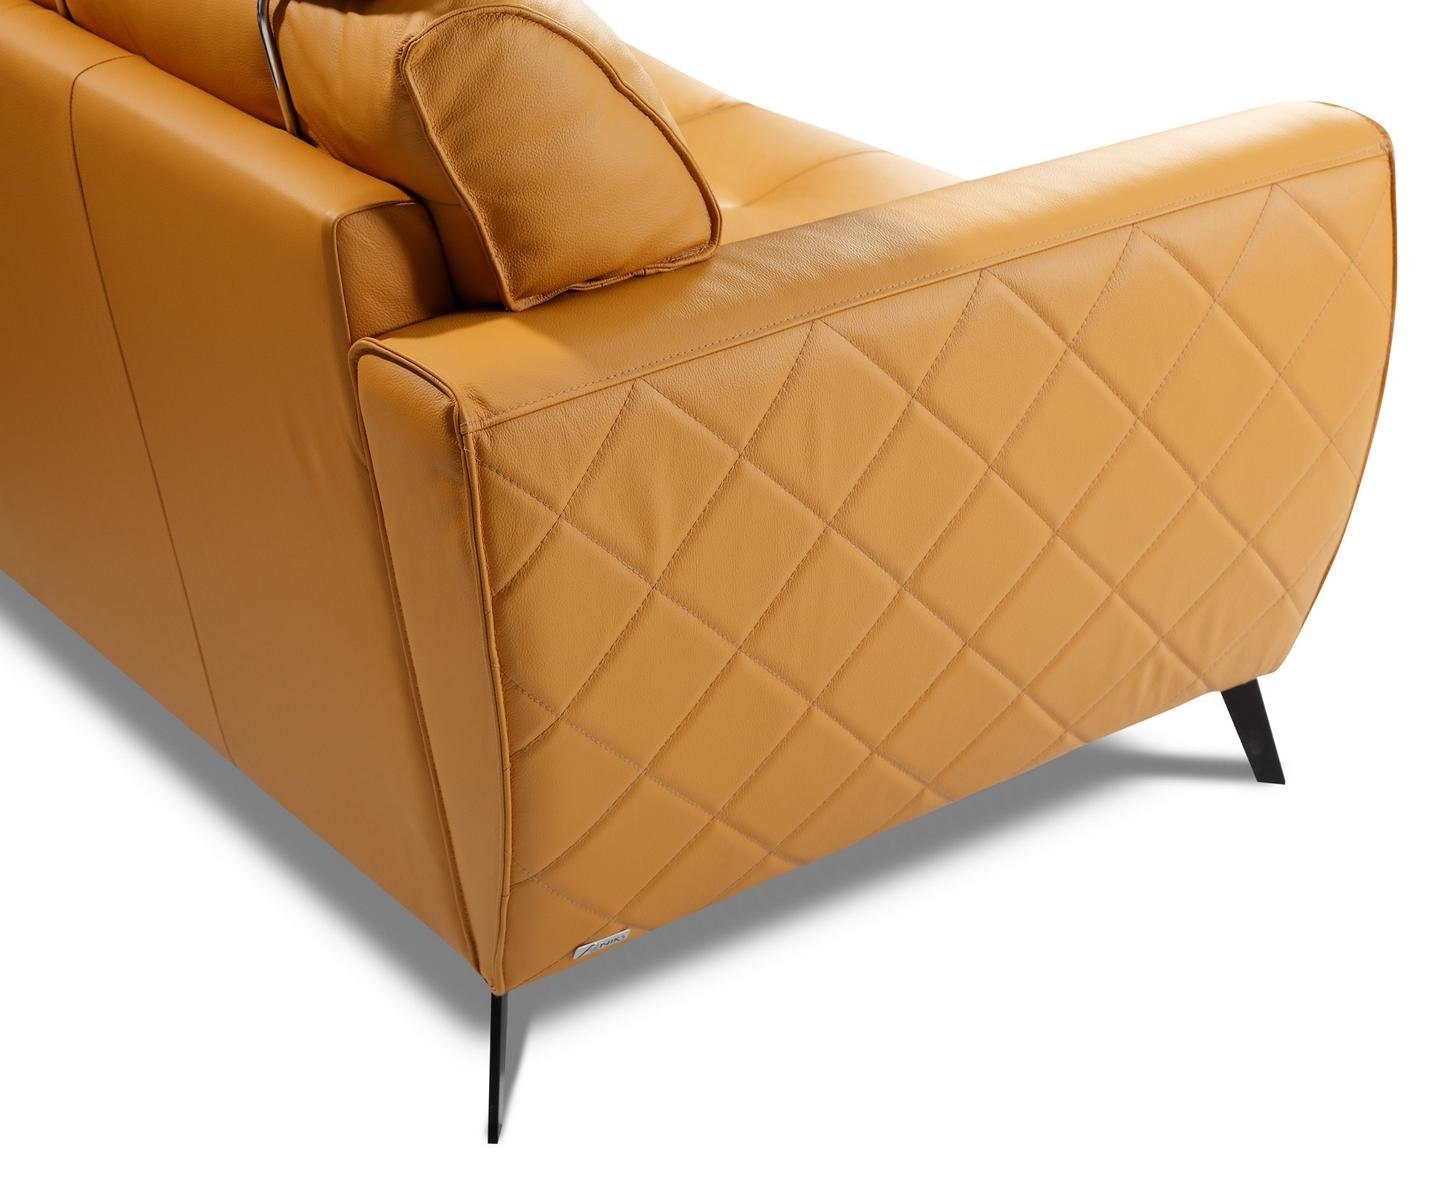 3er, Europe JVmoebel Gelb Dreisitzer Sofa 3-Sitzer Made in Couch Sitz Design Polster